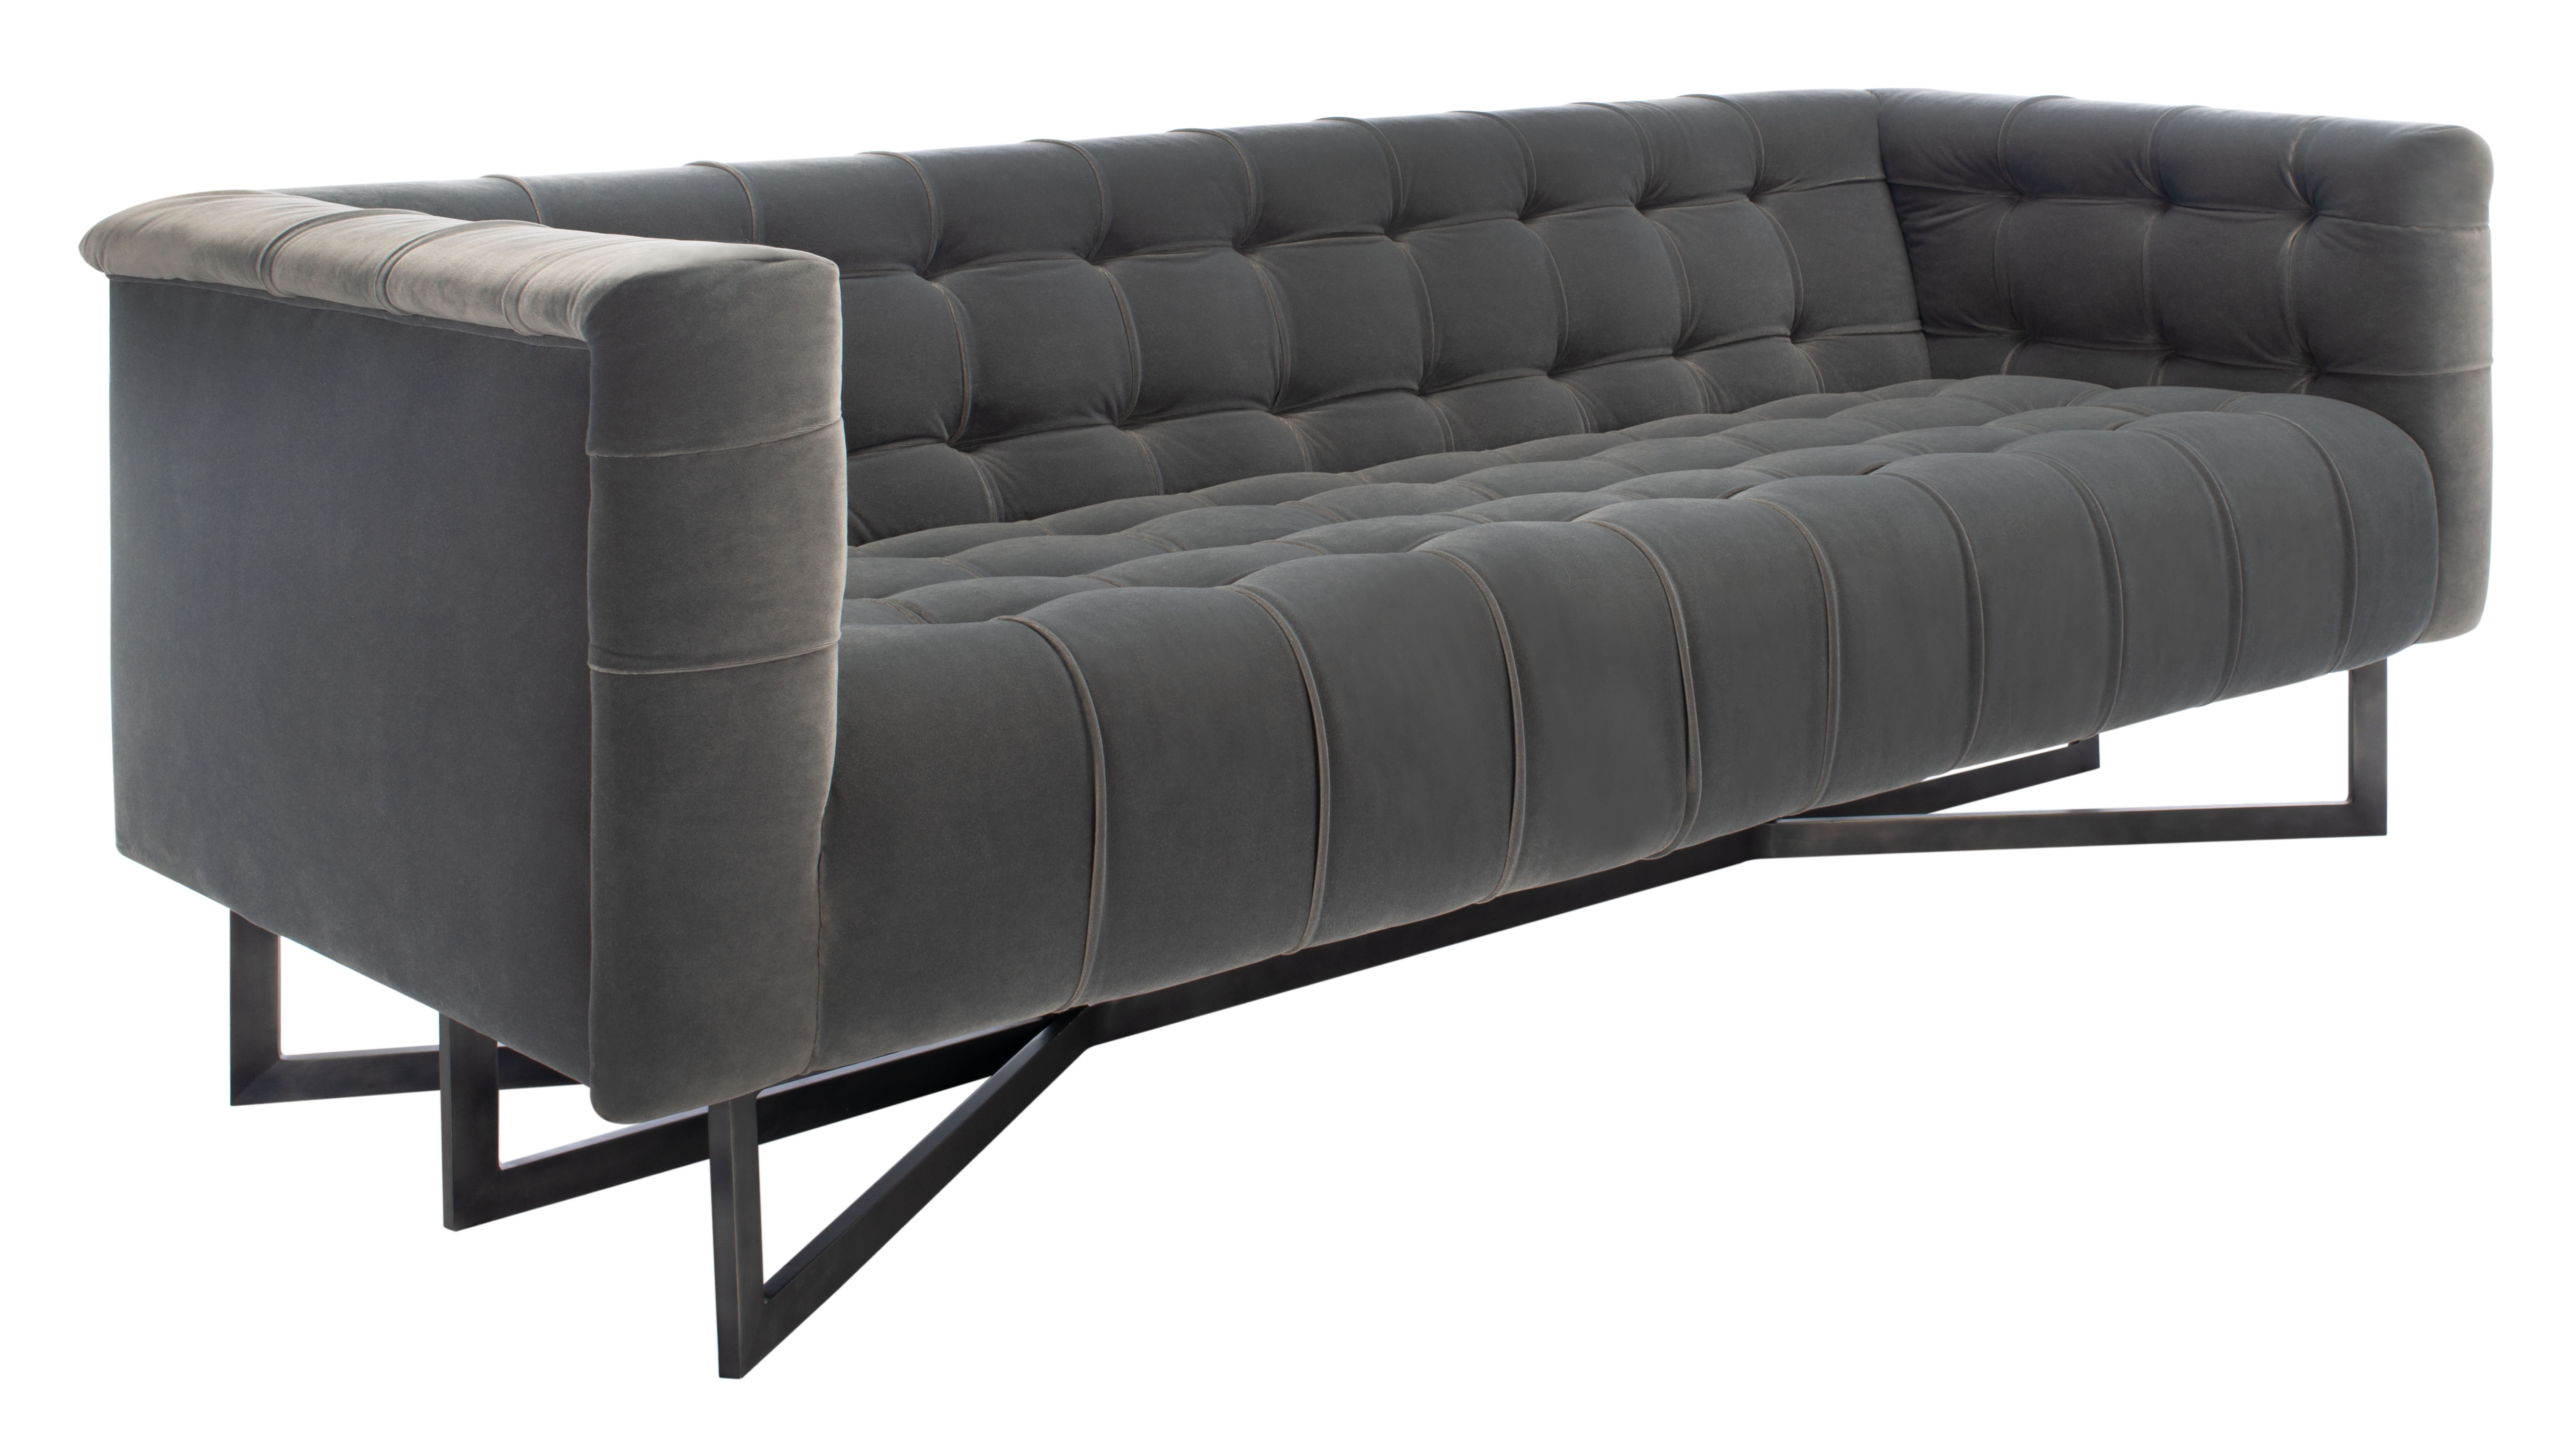 Myra Modern Tufted Sofa - Charcoal - Arlo Home - Image 2